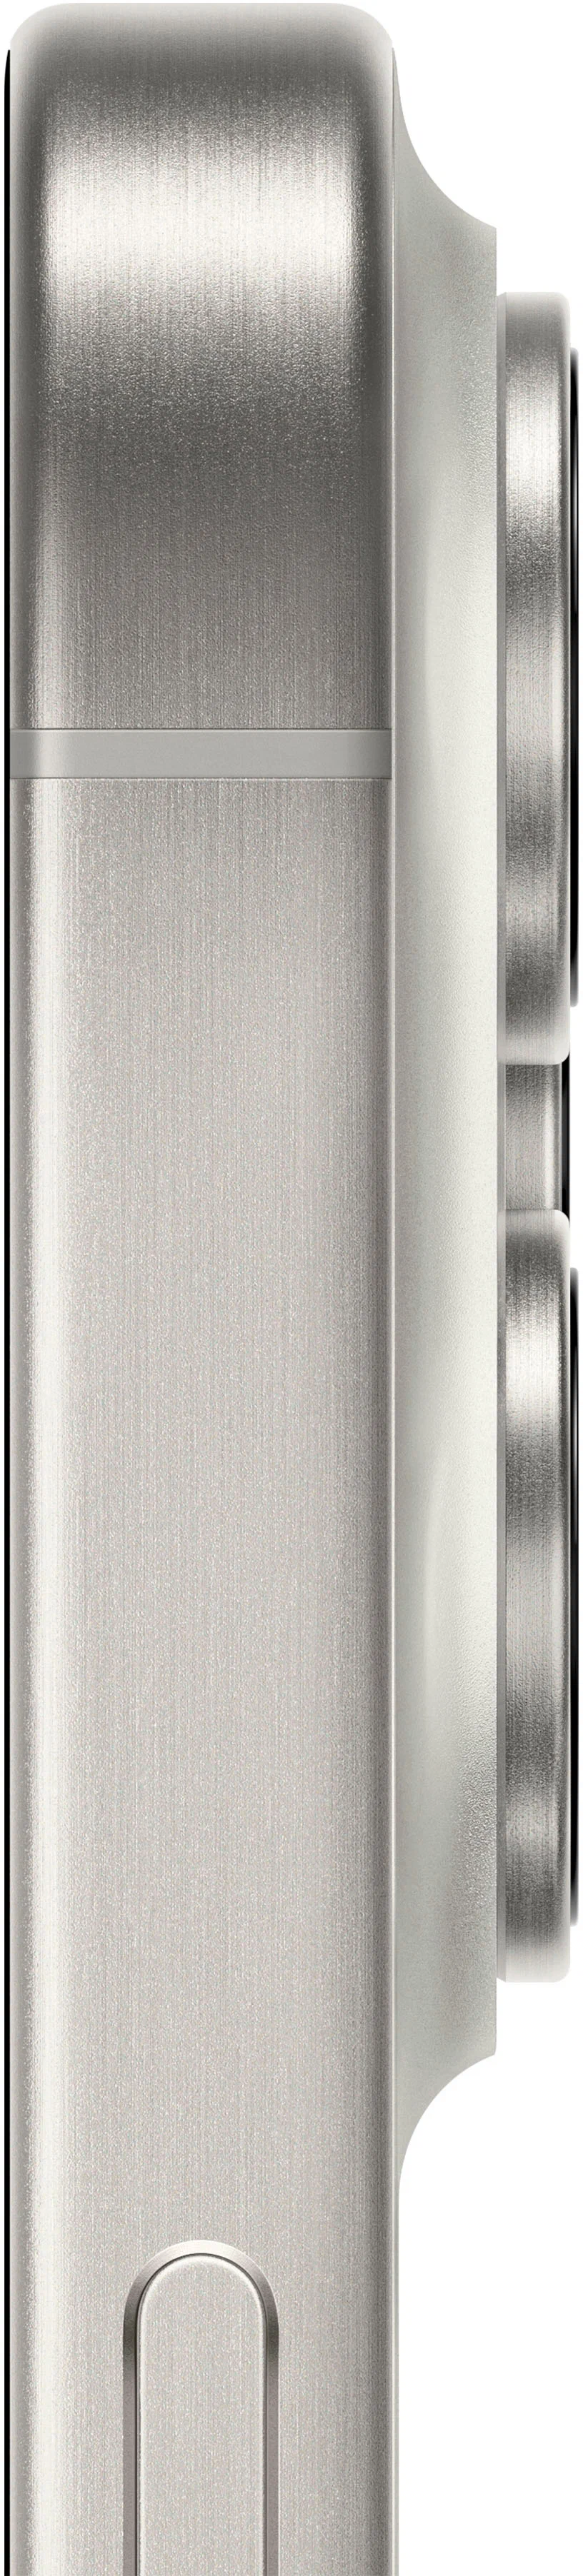 Смартфон Apple iPhone 15 Pro 256GB eSim White Titanium